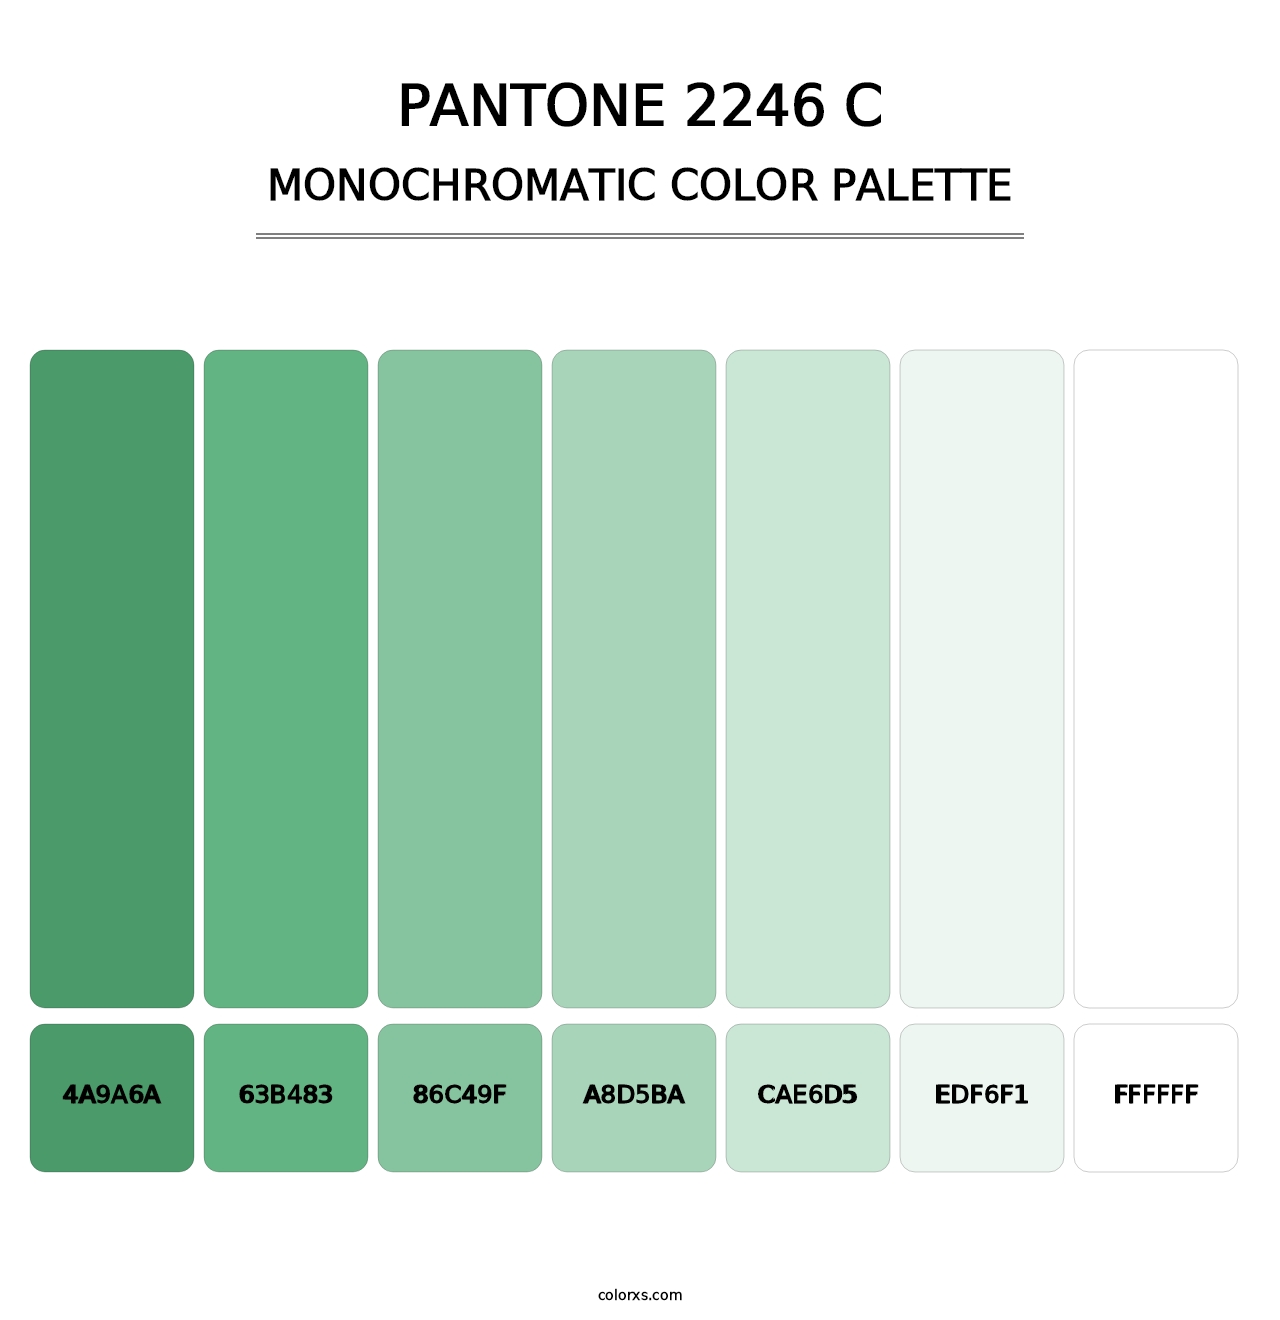 PANTONE 2246 C - Monochromatic Color Palette